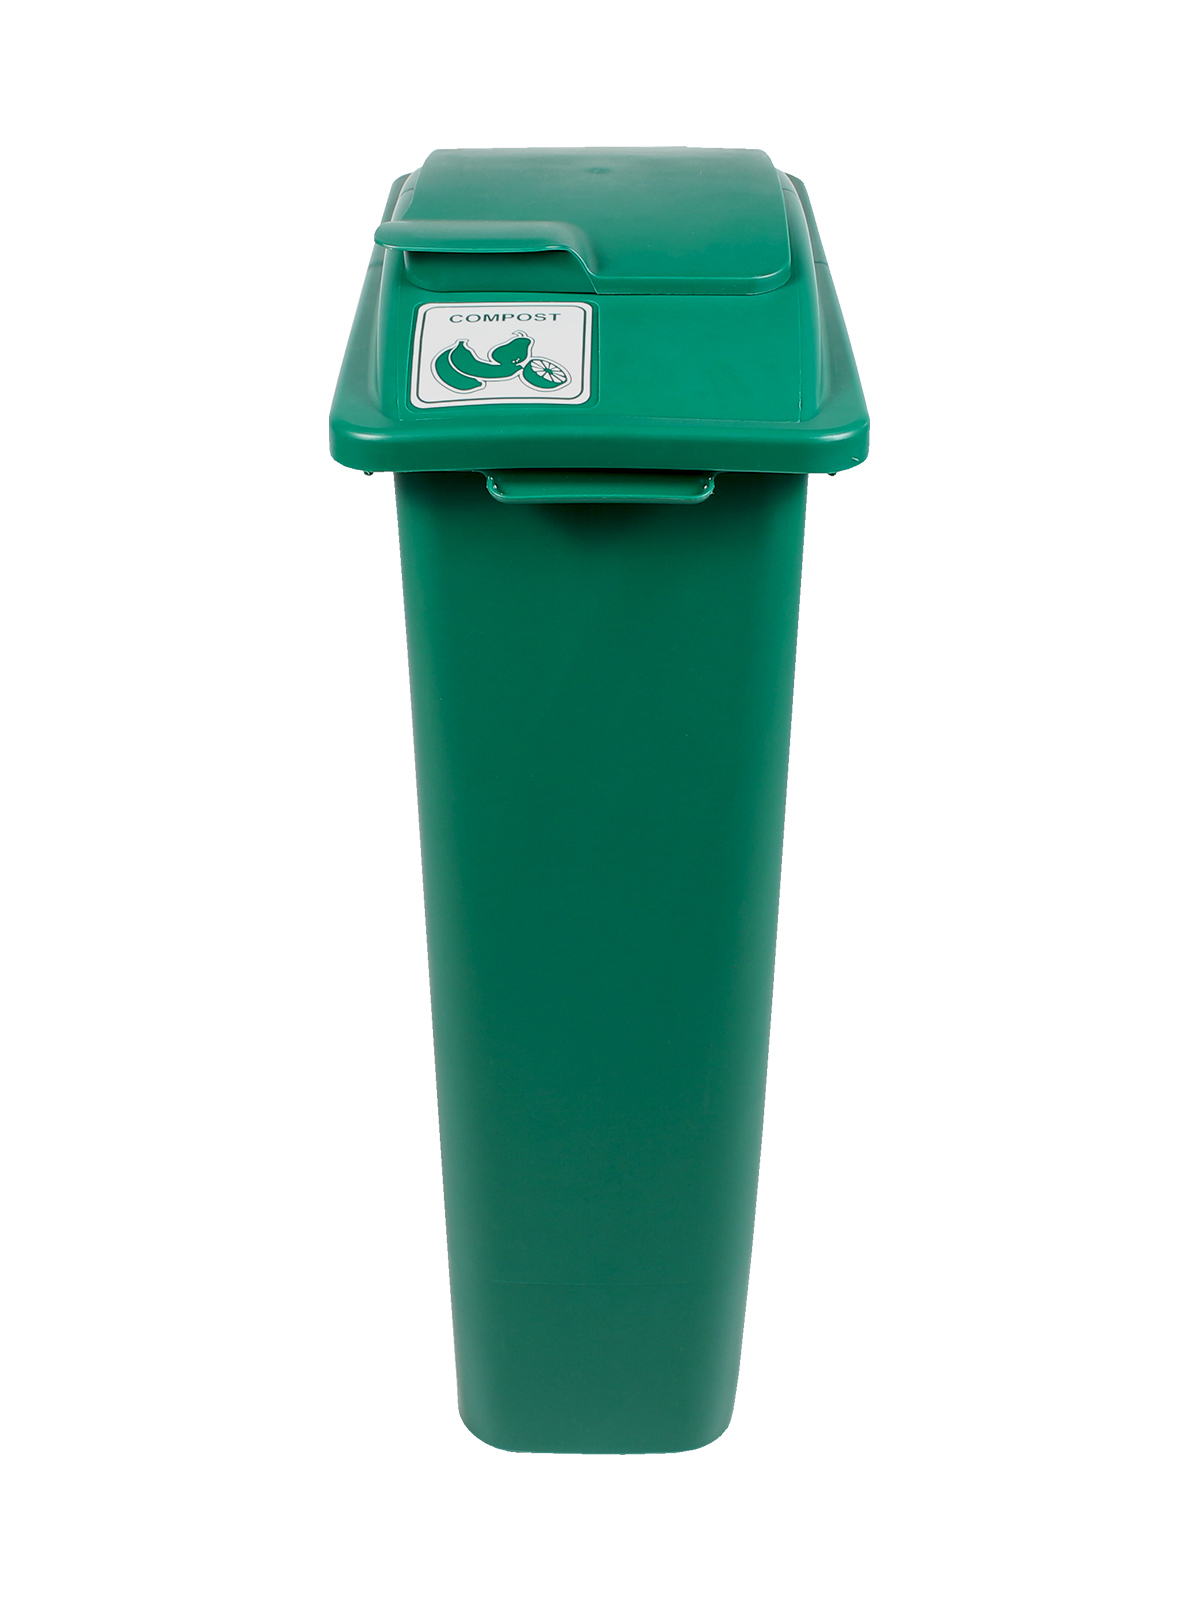 废物观察者 - 单堆肥 - 实心升降机 - 绿色